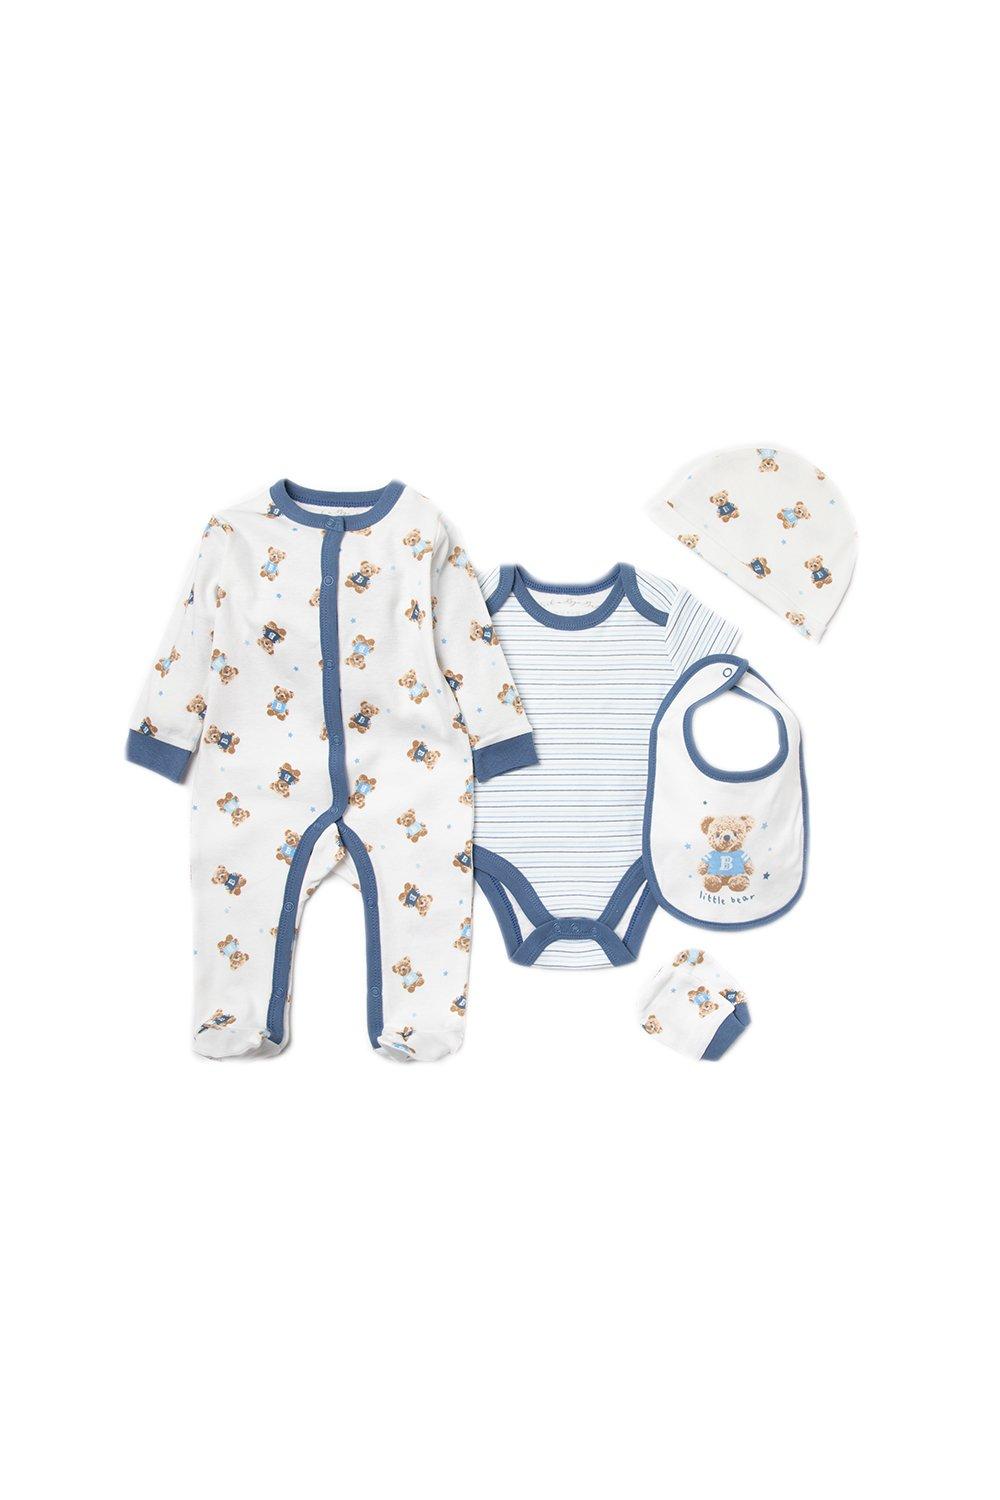 Хлопковый подарочный набор из 6 предметов с принтом медведя для ребенка Rock a Bye Baby, синий платье baby a в полоску размер 5 лет голубой